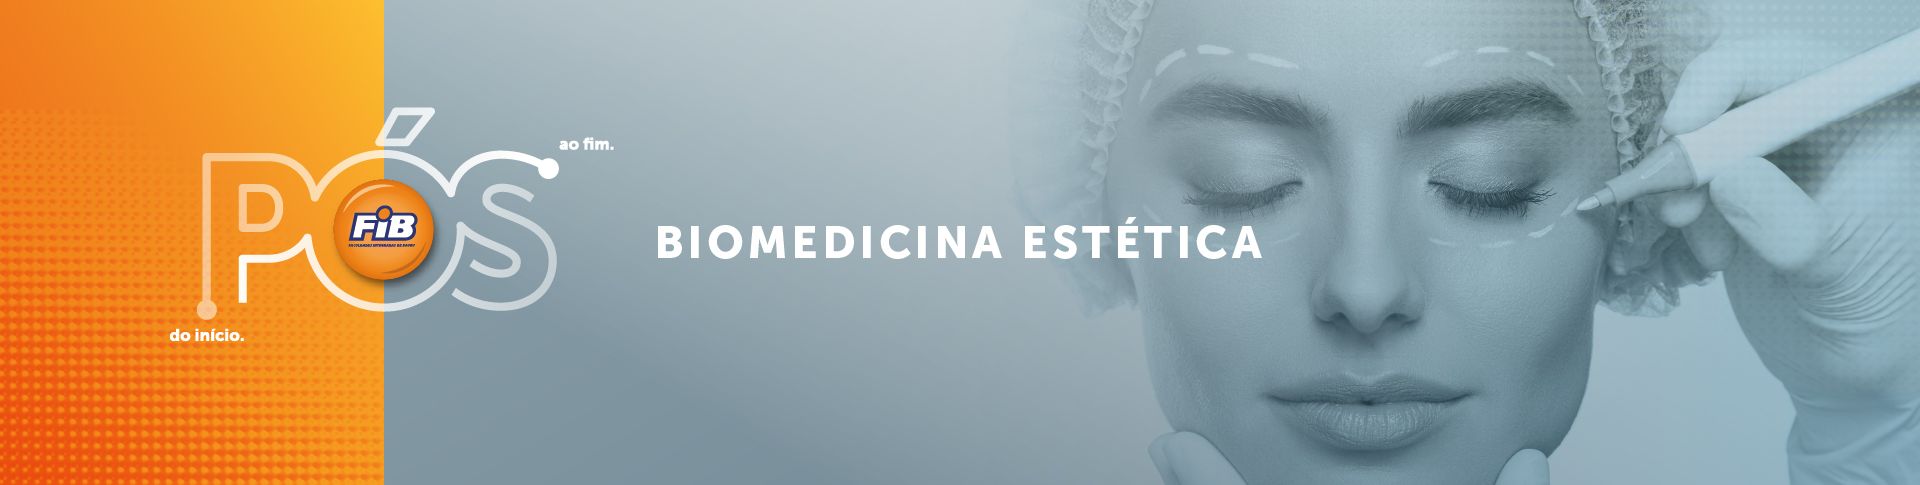 Biomedicina Estética